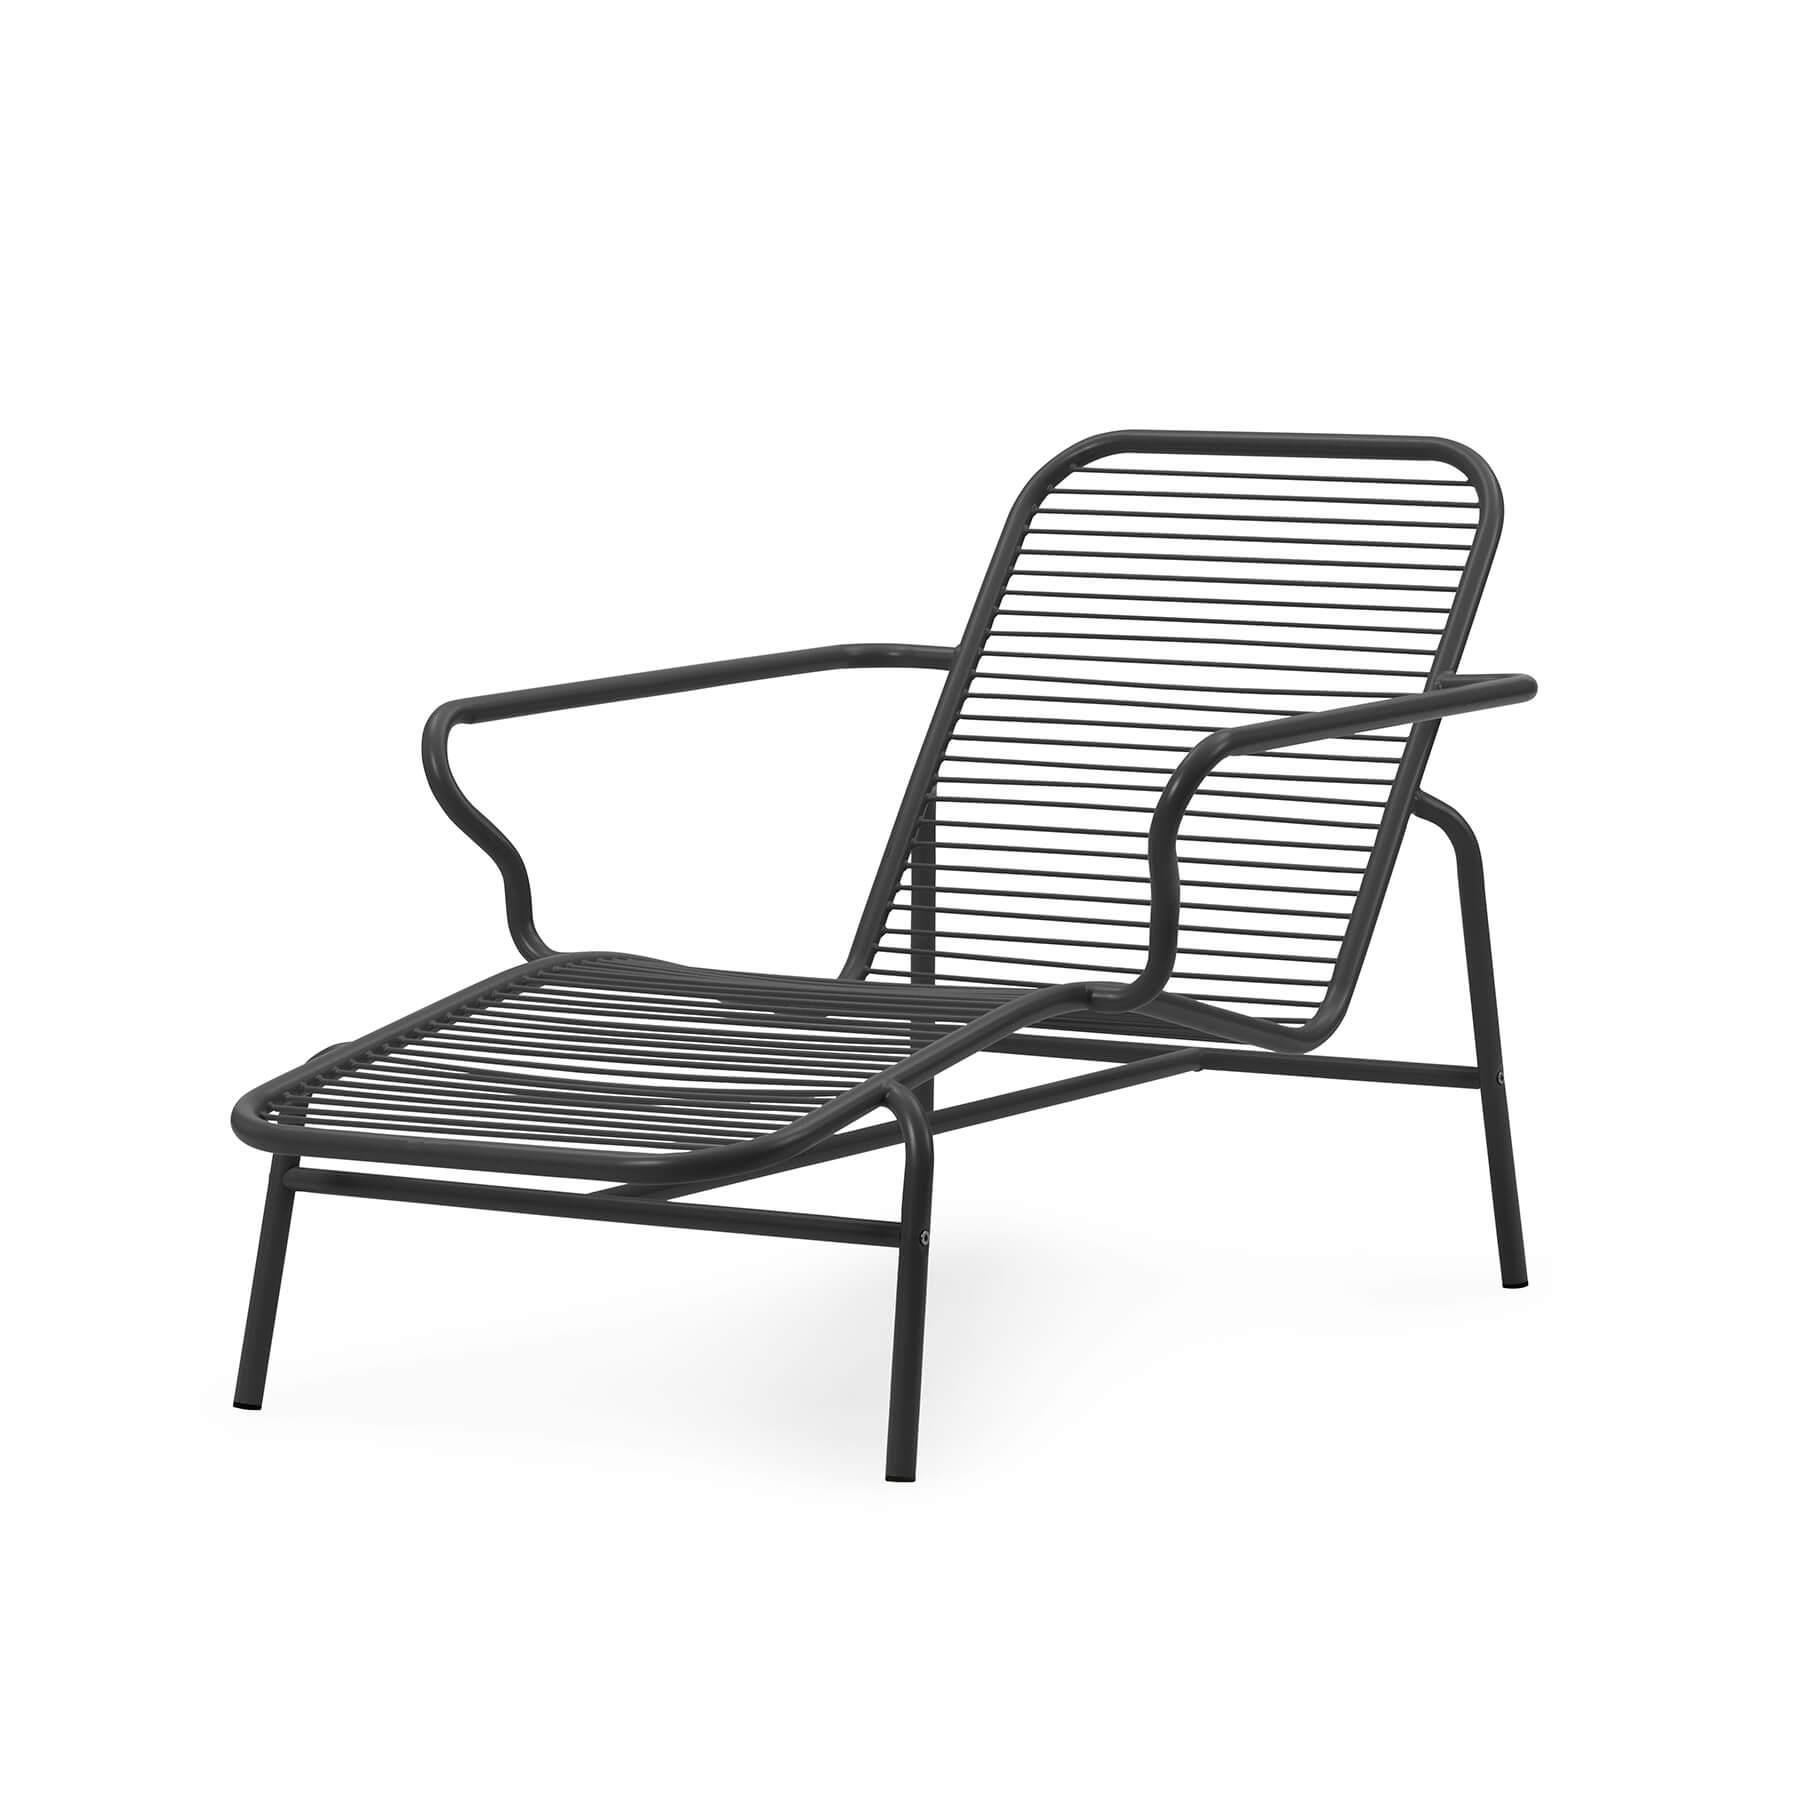 Normann Copenhagen Vig Garden Chaise Lounge Chair Black Designer Furniture From Holloways Of Ludlow